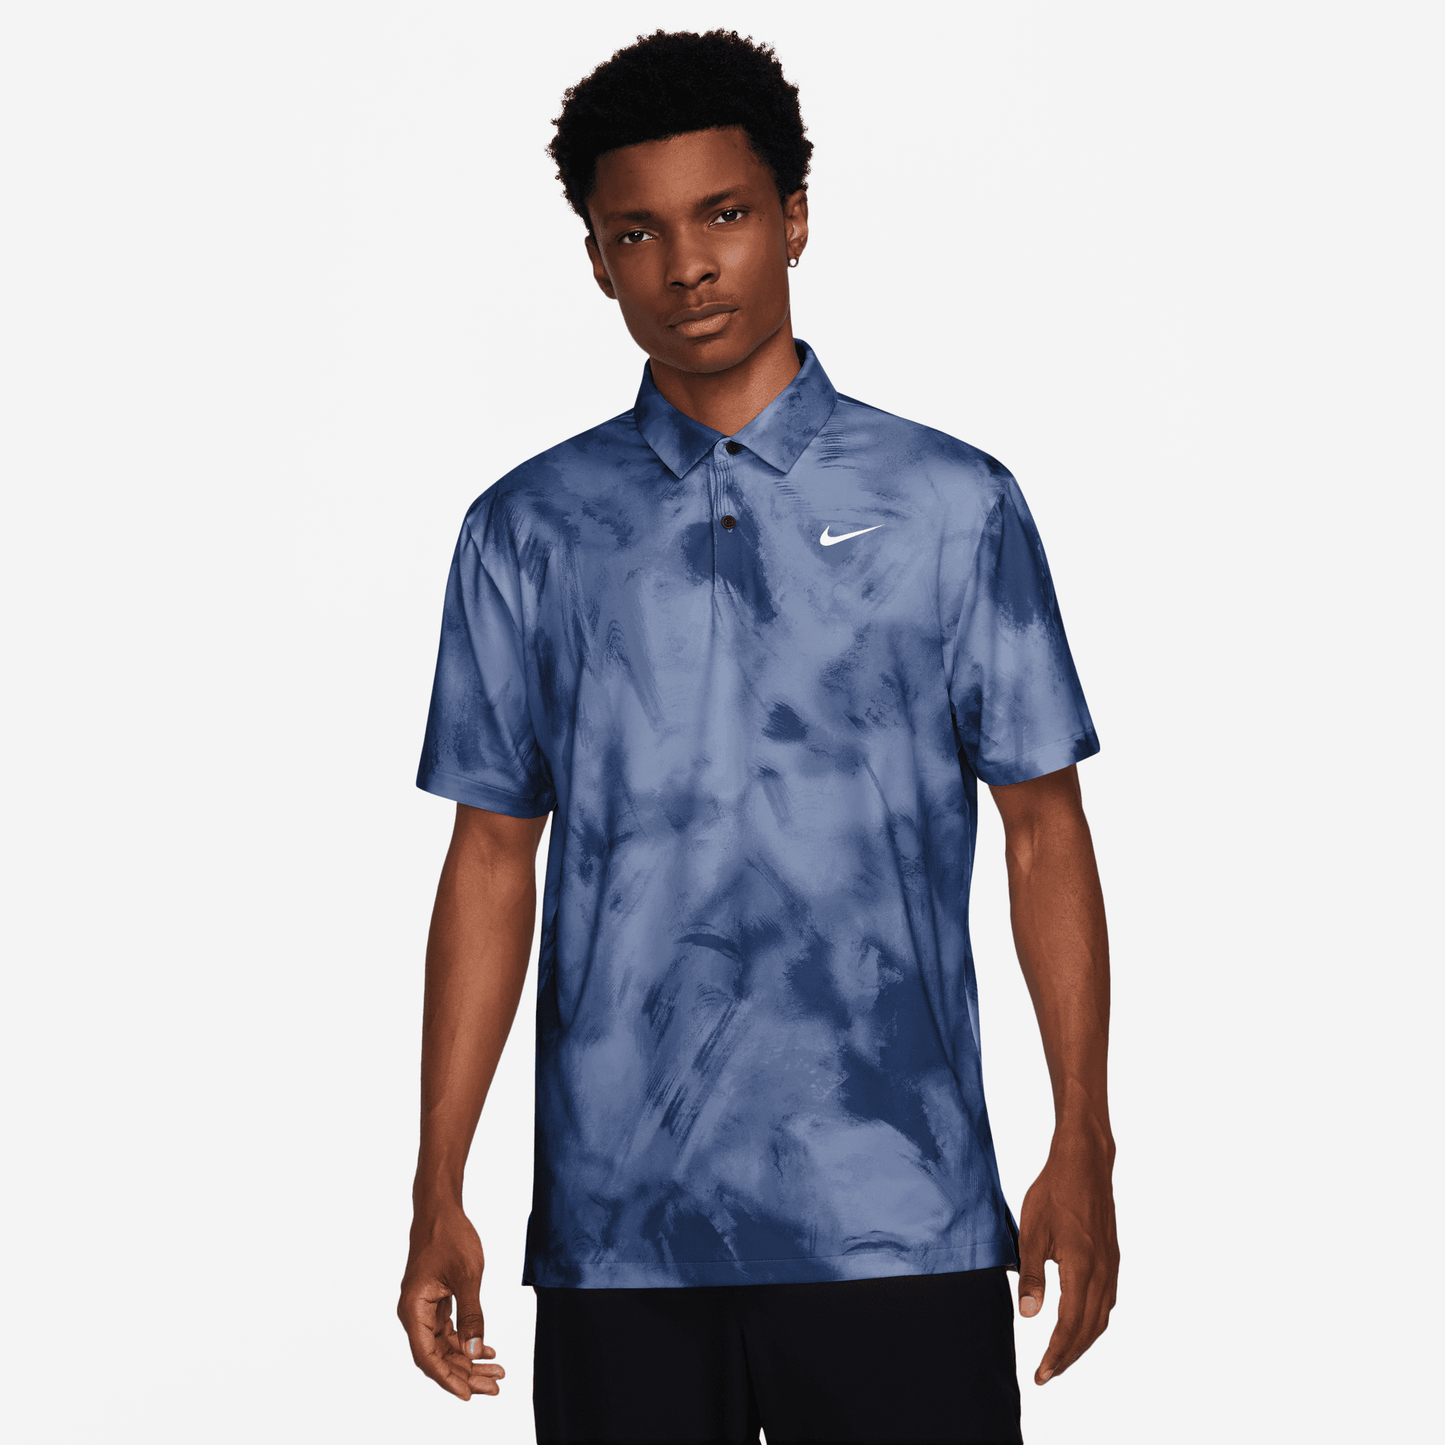 Nike Golf Ombre Print Tour Polo Shirt FD5935 - 451 Obsidian / White 451 M 